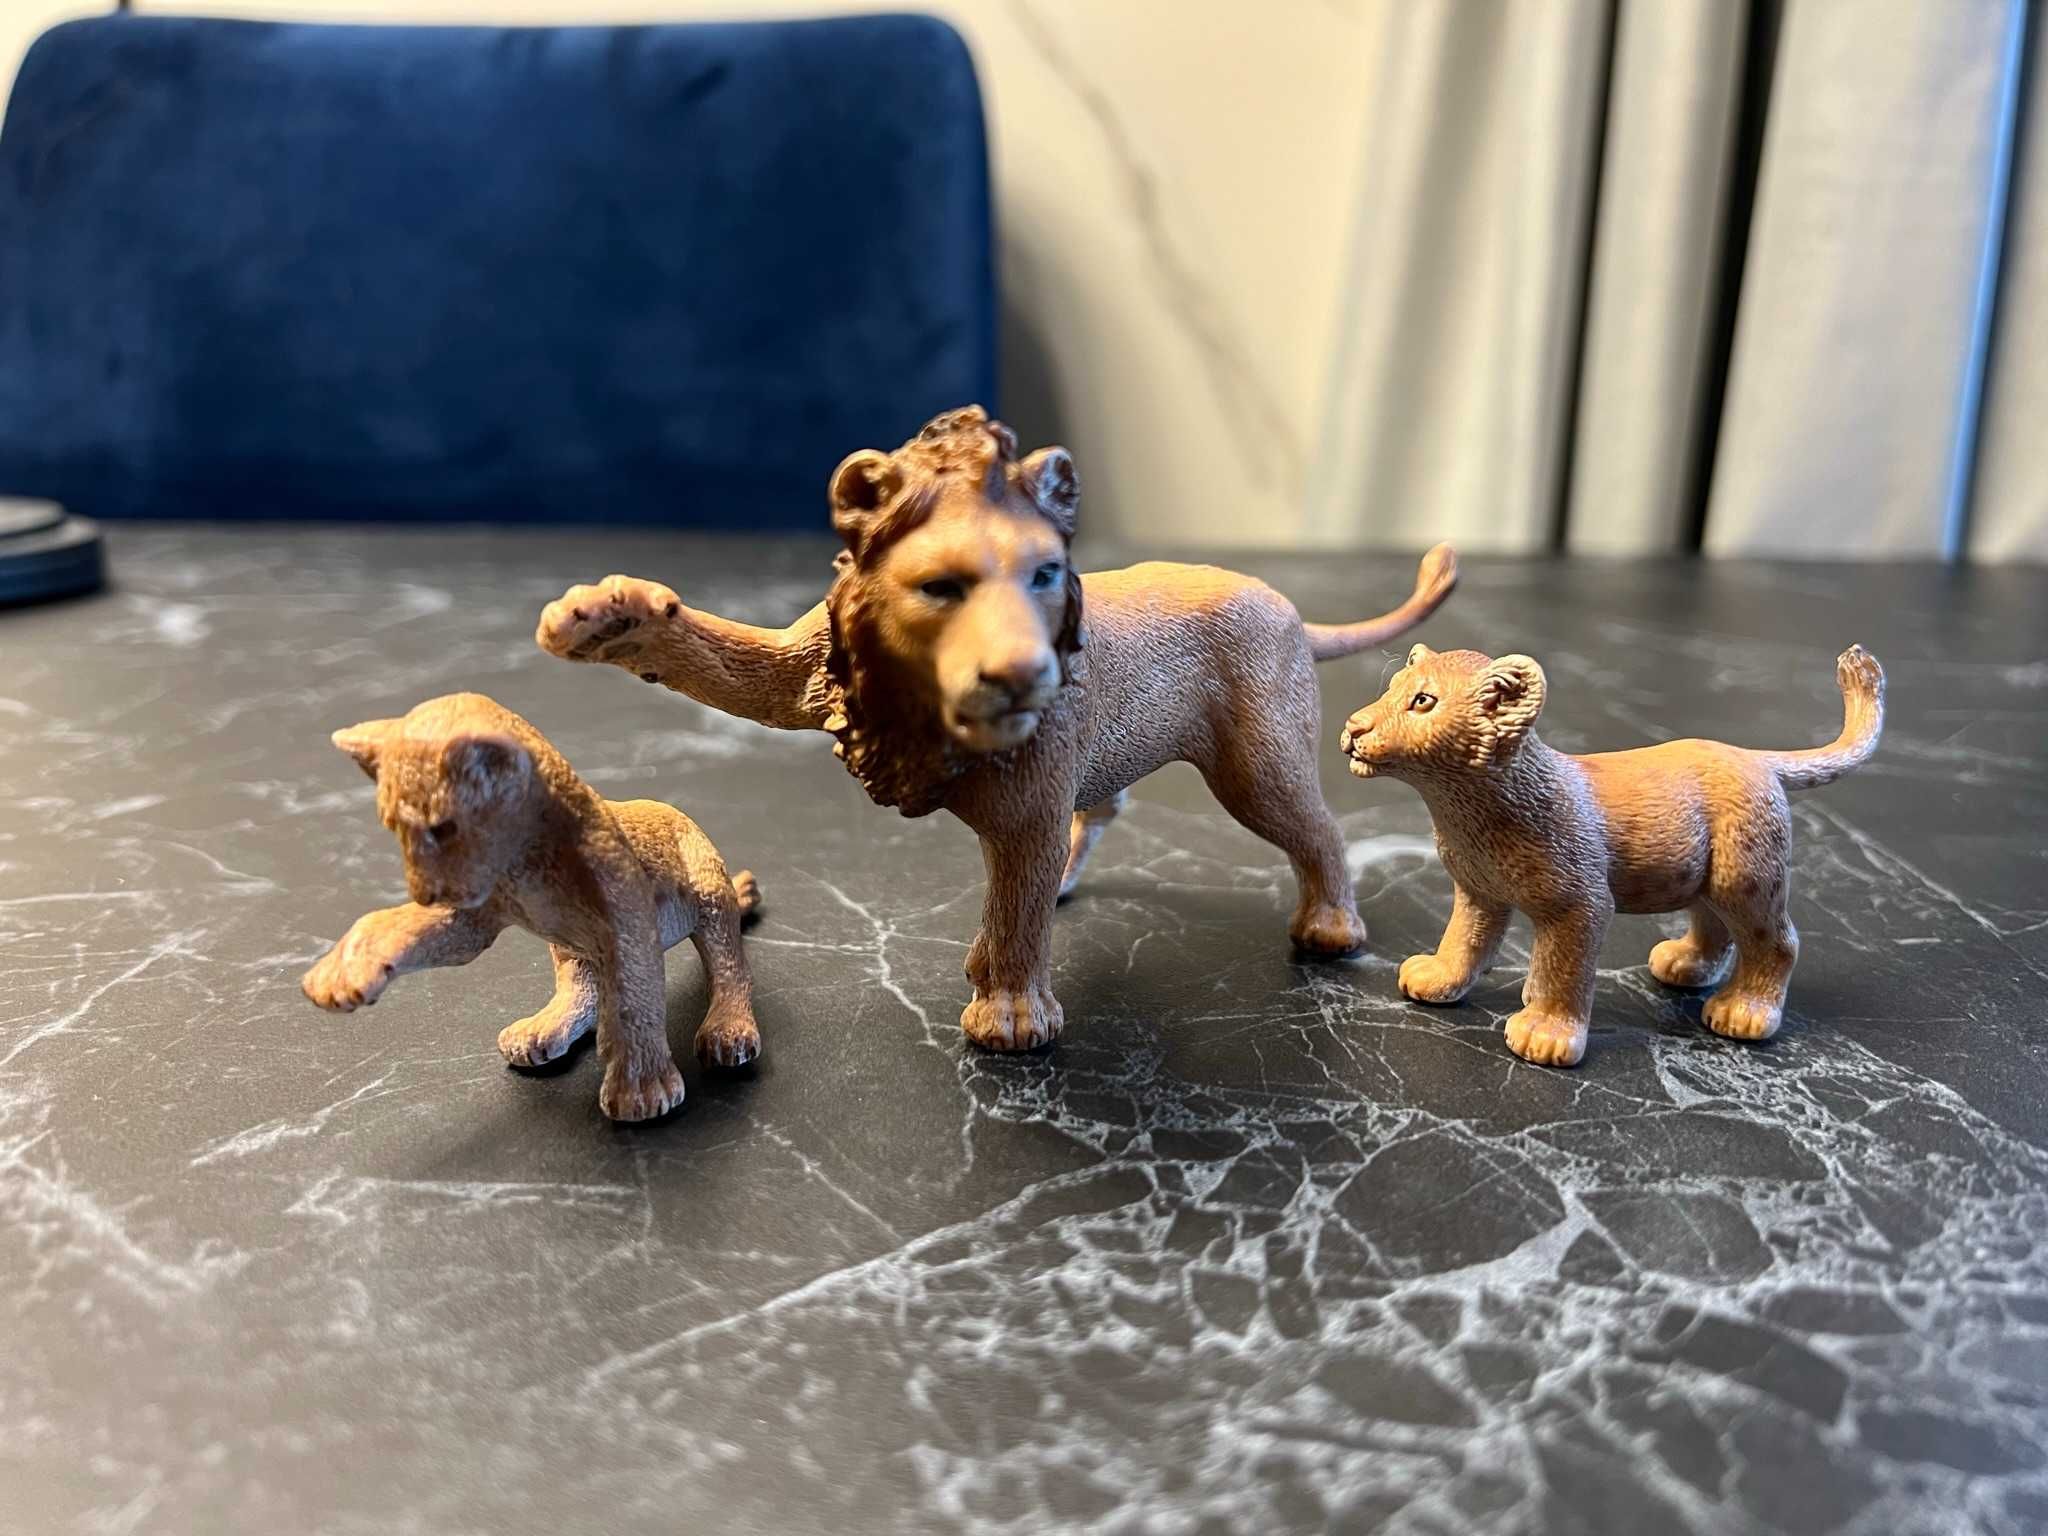 Zestaw figurek: Figurki Schleich zwierzęta kot lew wilk gepard 9 sztuk